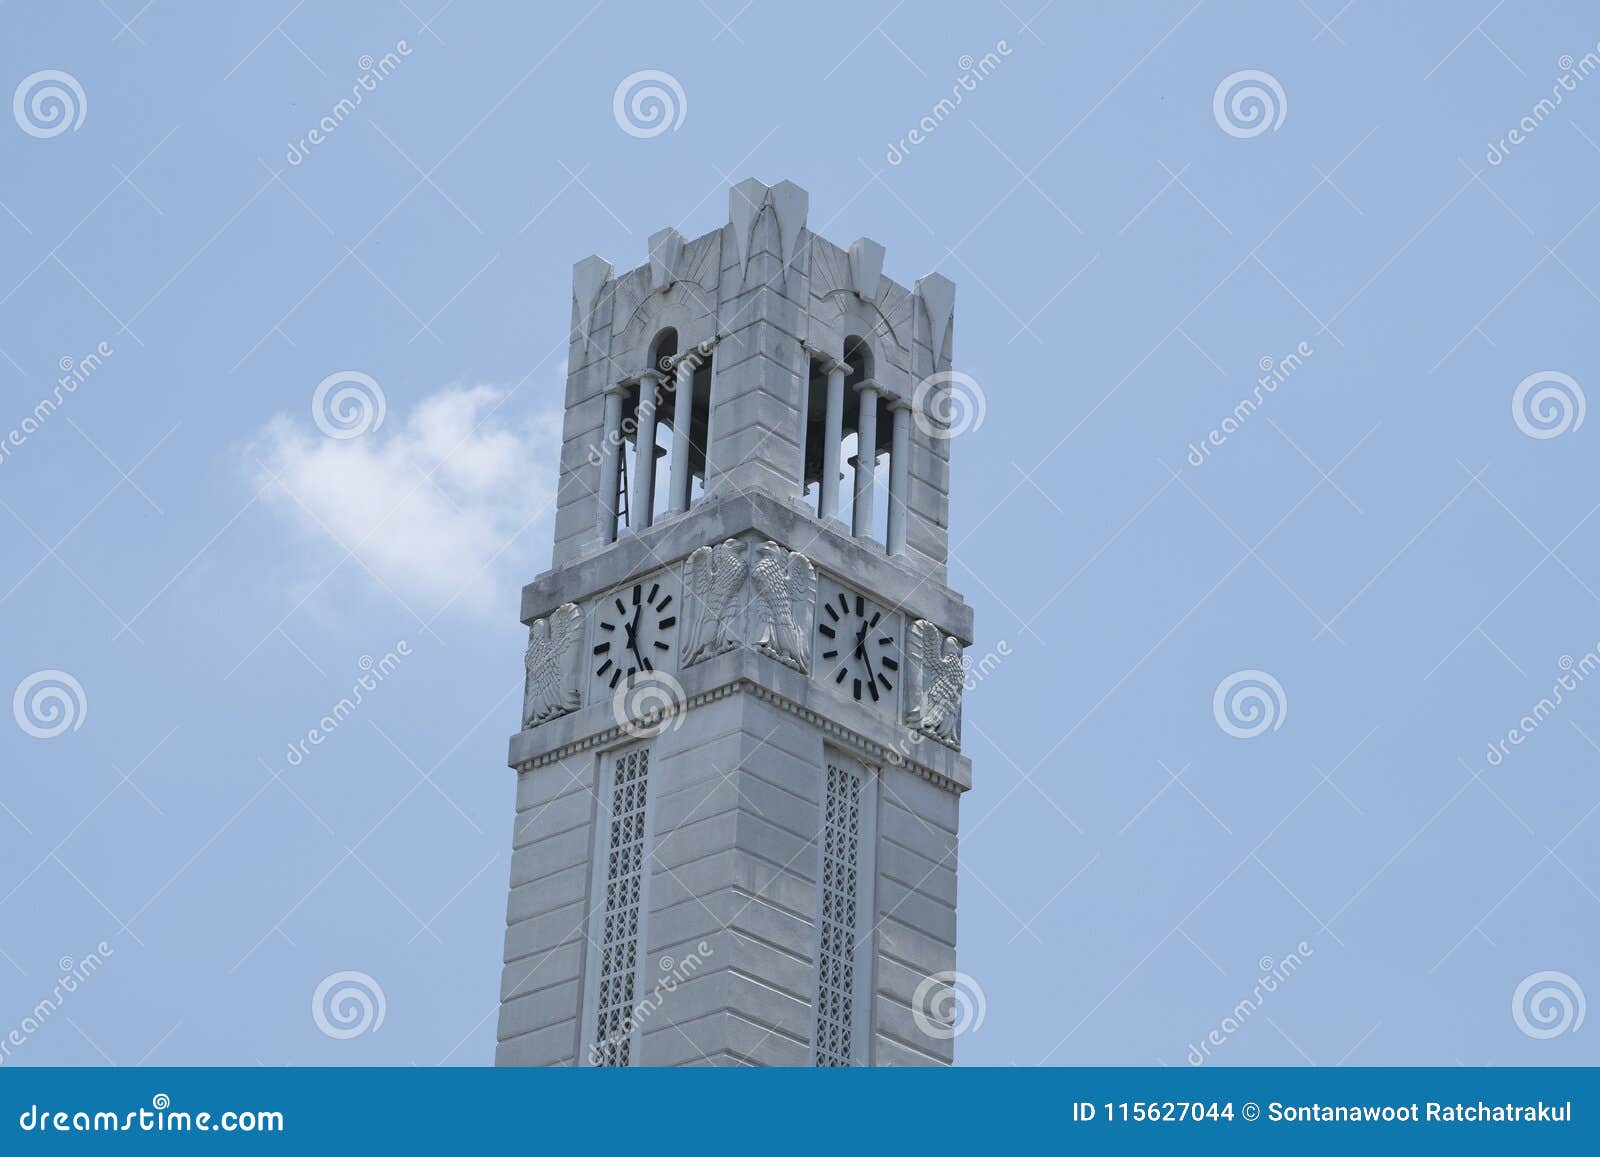 Torre inclinada do pulso de disparo e de sino no fundo do céu azul